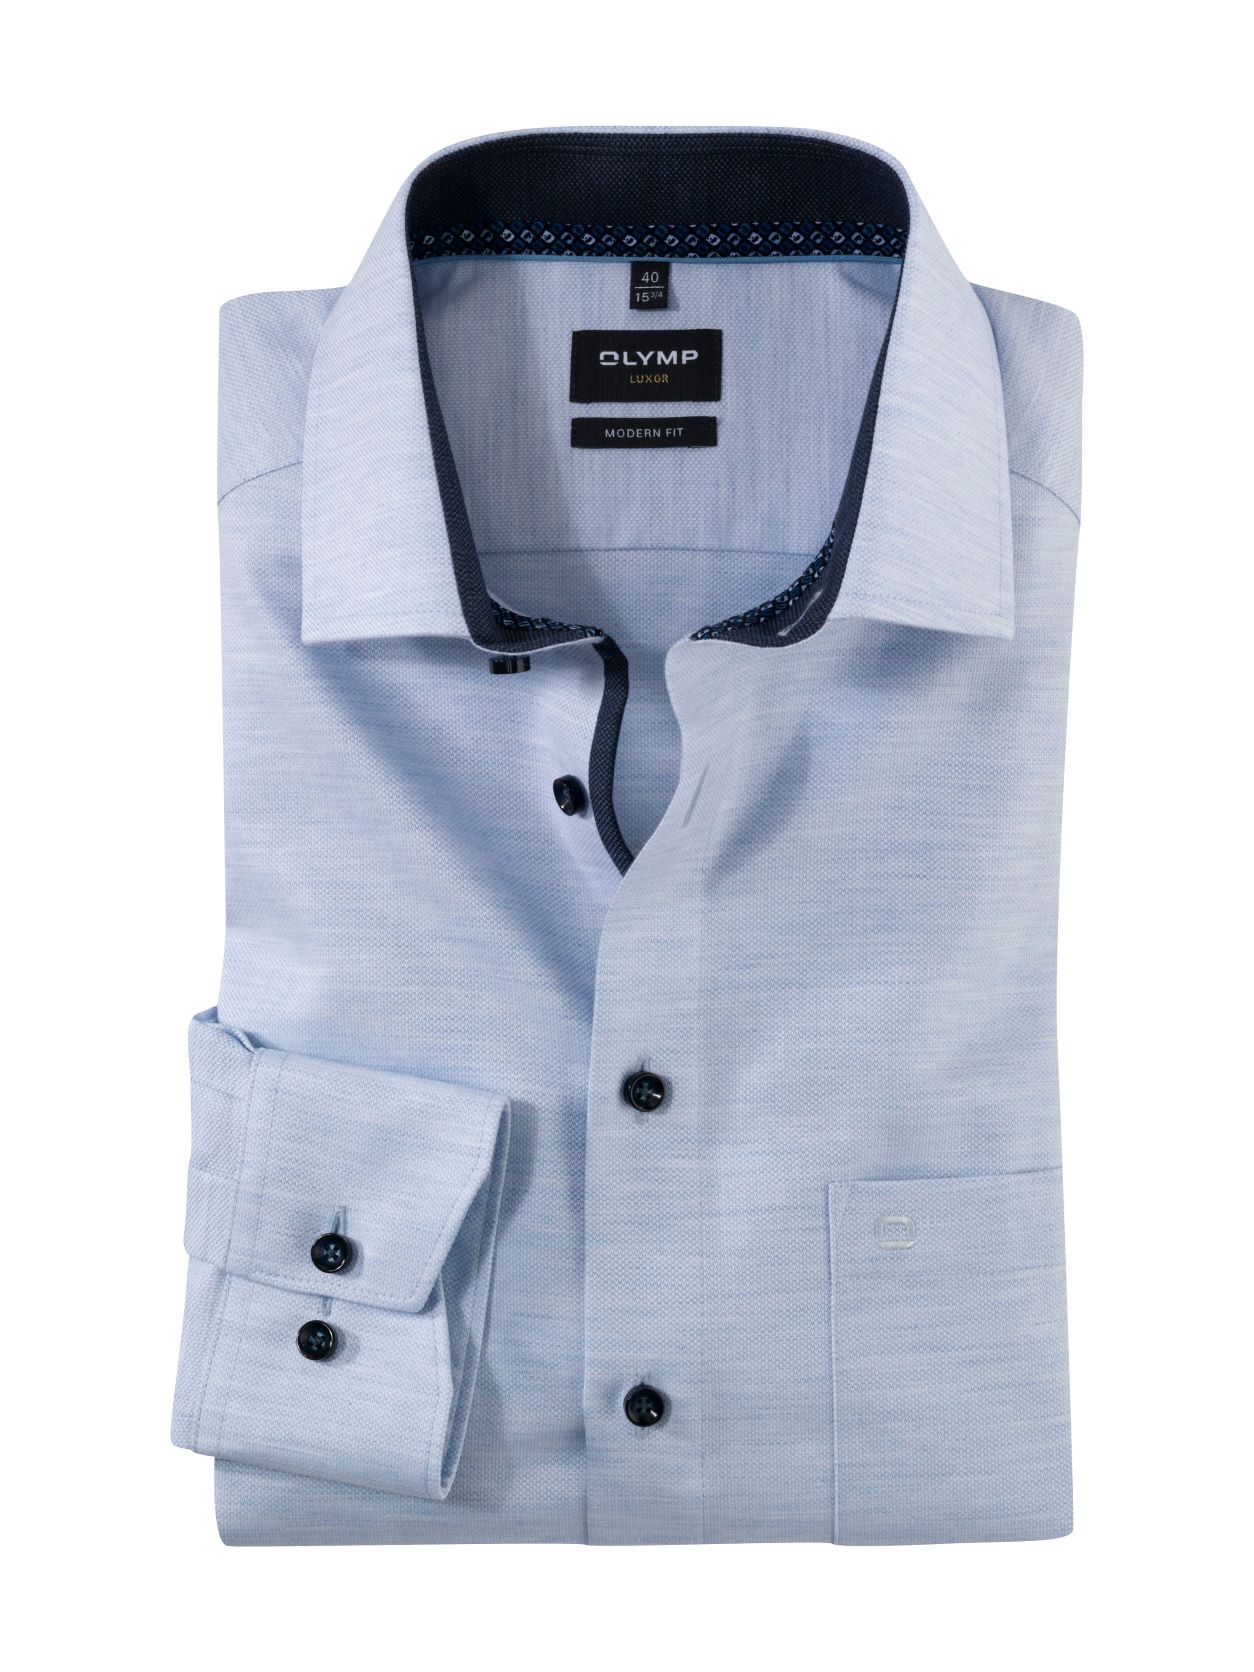 OLYMP Luxor Modern Fit společenská košile s prodlouženým rukávem 1261 29 11 Modrá 43